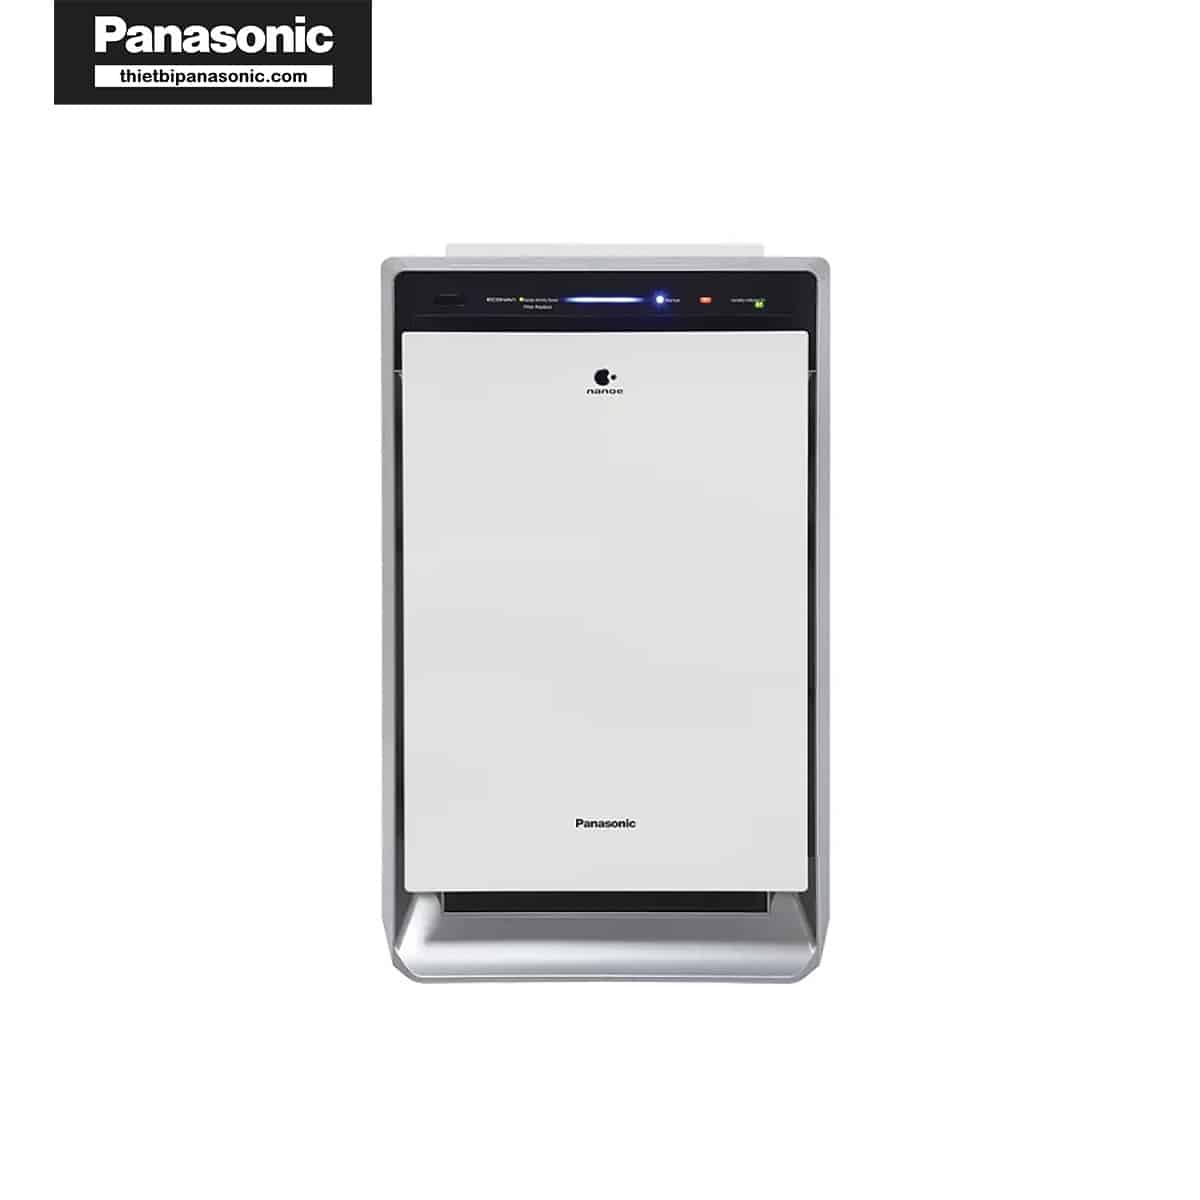 Máy lọc không khí Panasonic F-VXK70 hoạt động tốt với màng lọc khử mùi Panasonic